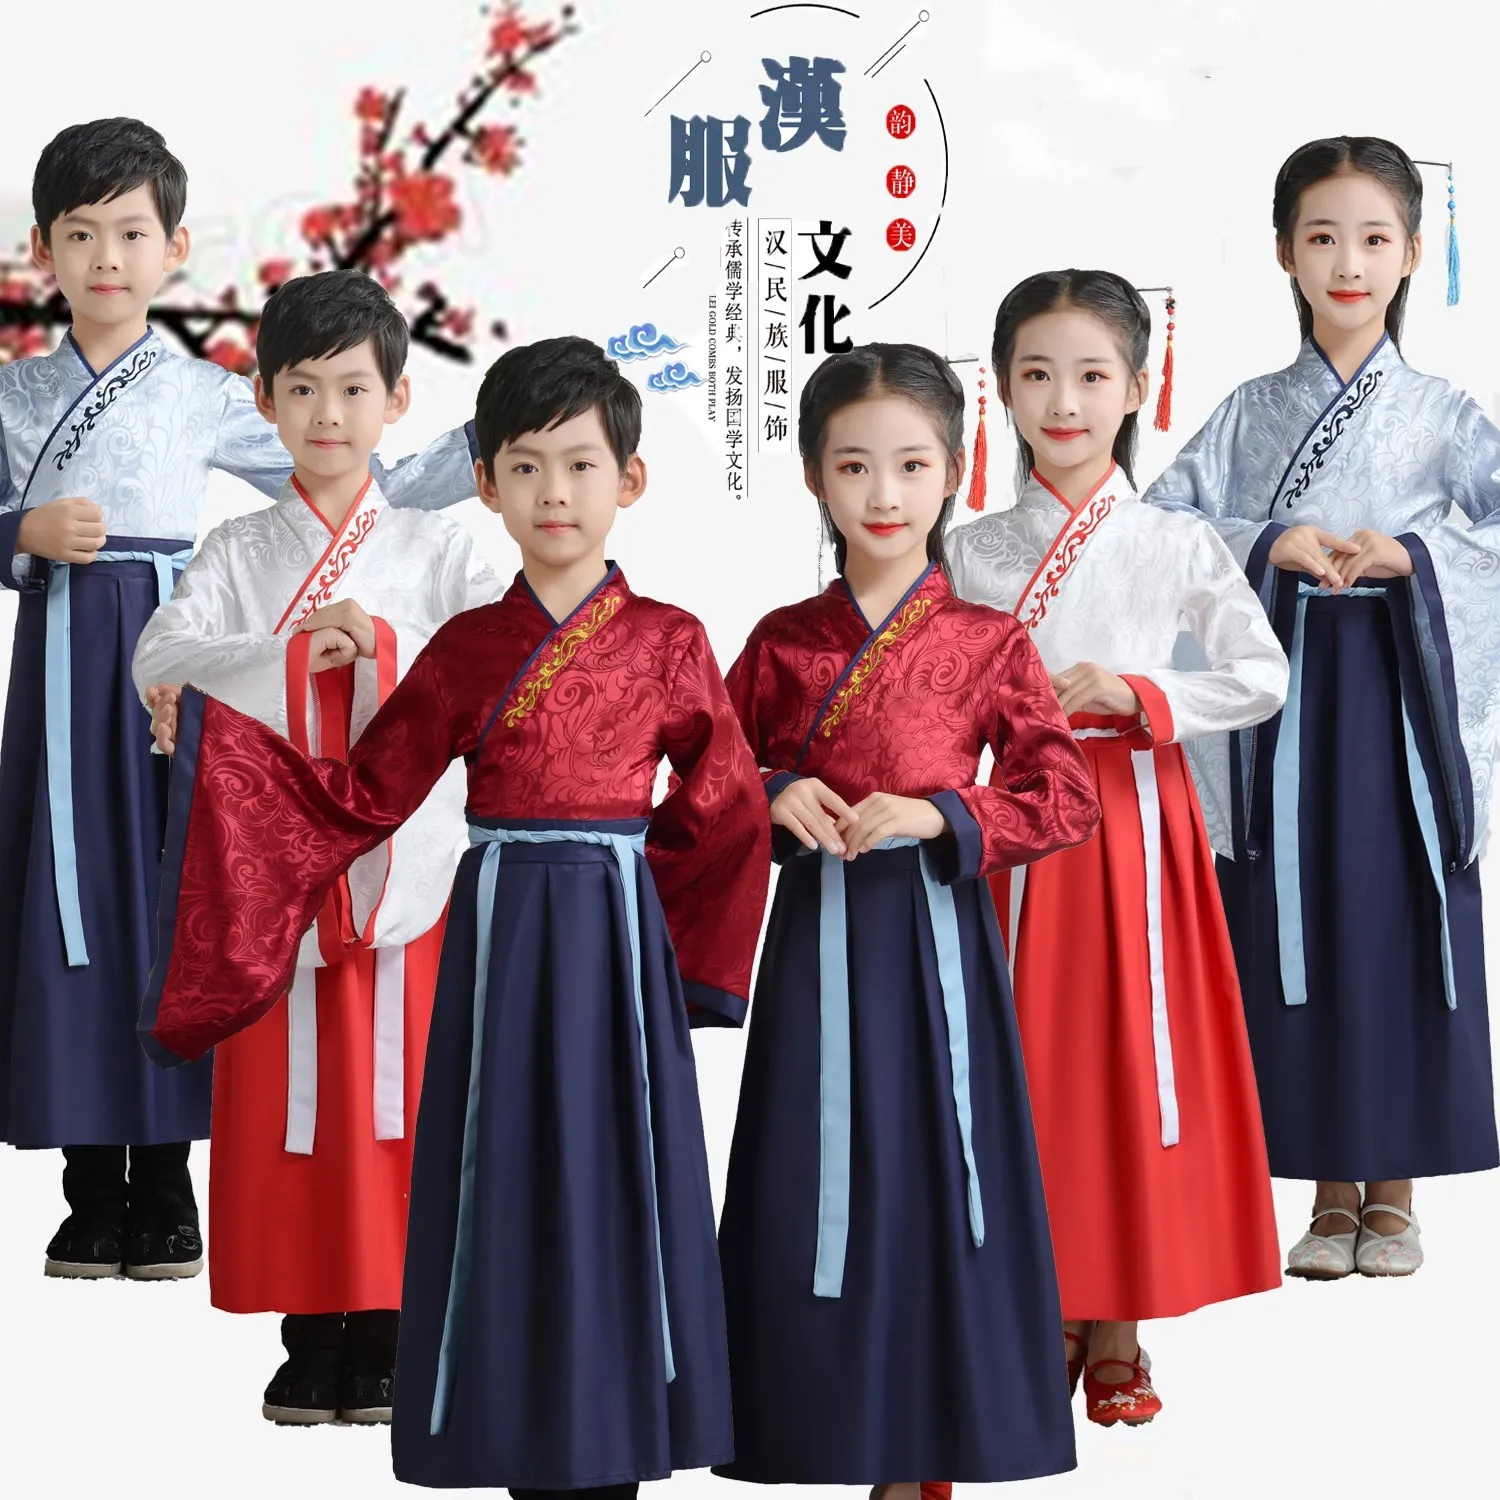 

Традиционная китайская одежда для детей, старинные костюмы для маленьких девочек, костюм народного танца ханьфу, костюм для выступлений на ...